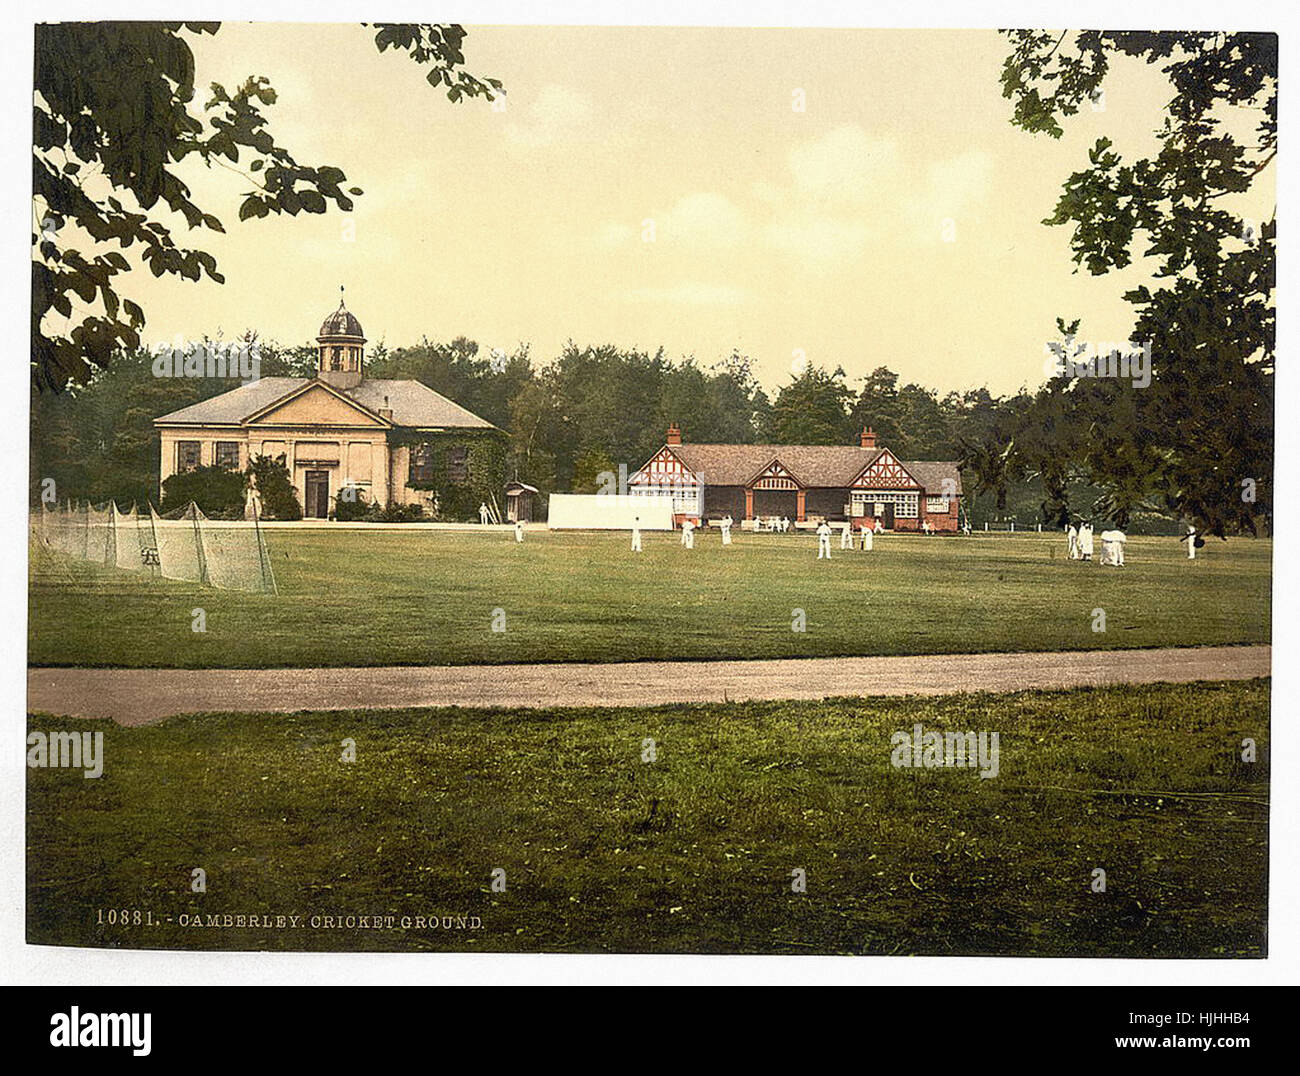 Collège militaire royal, terrains de cricket, Sandhurst, Camberley, Angleterre - Photochrom xixème siècle Banque D'Images